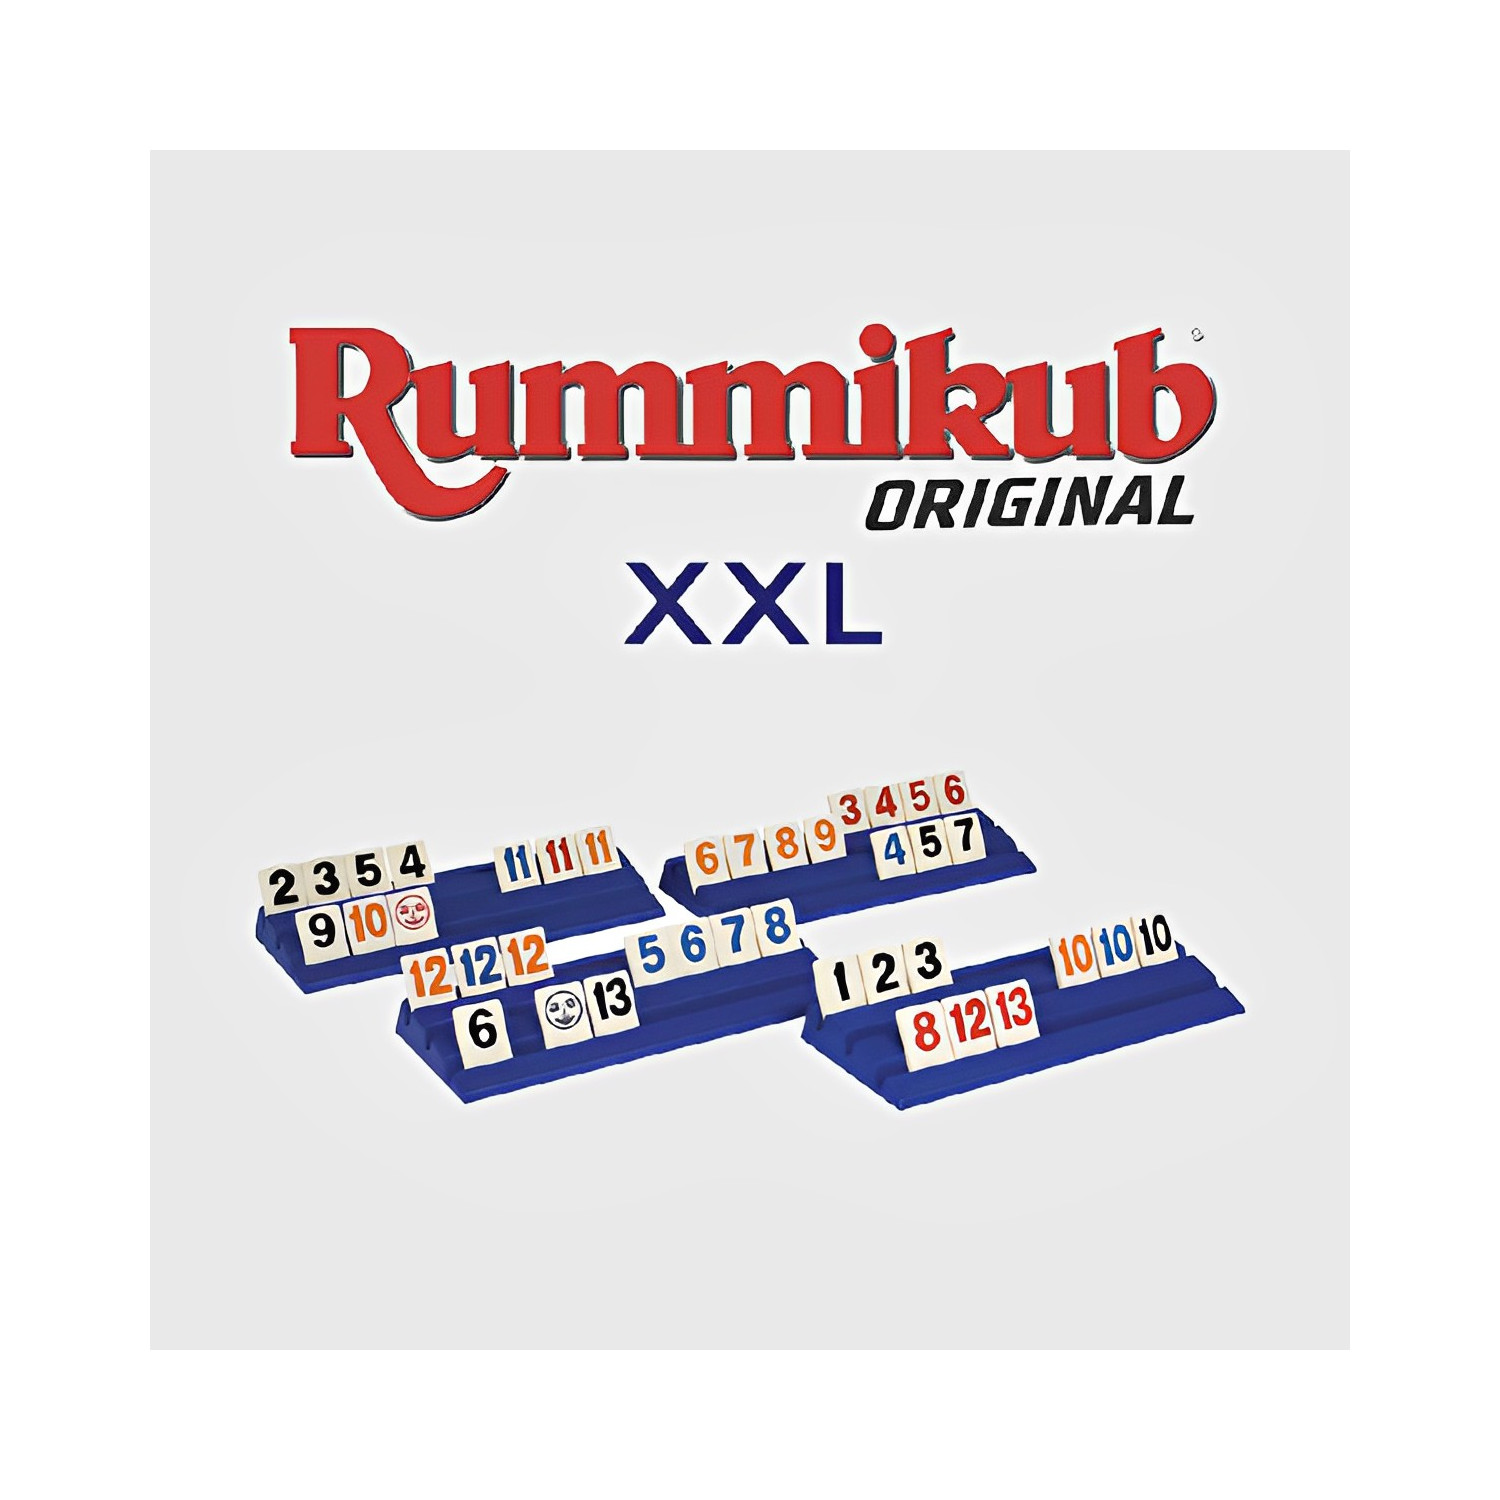 Découvrez Rummikub XXL : le jeu de stratégies accessible aux